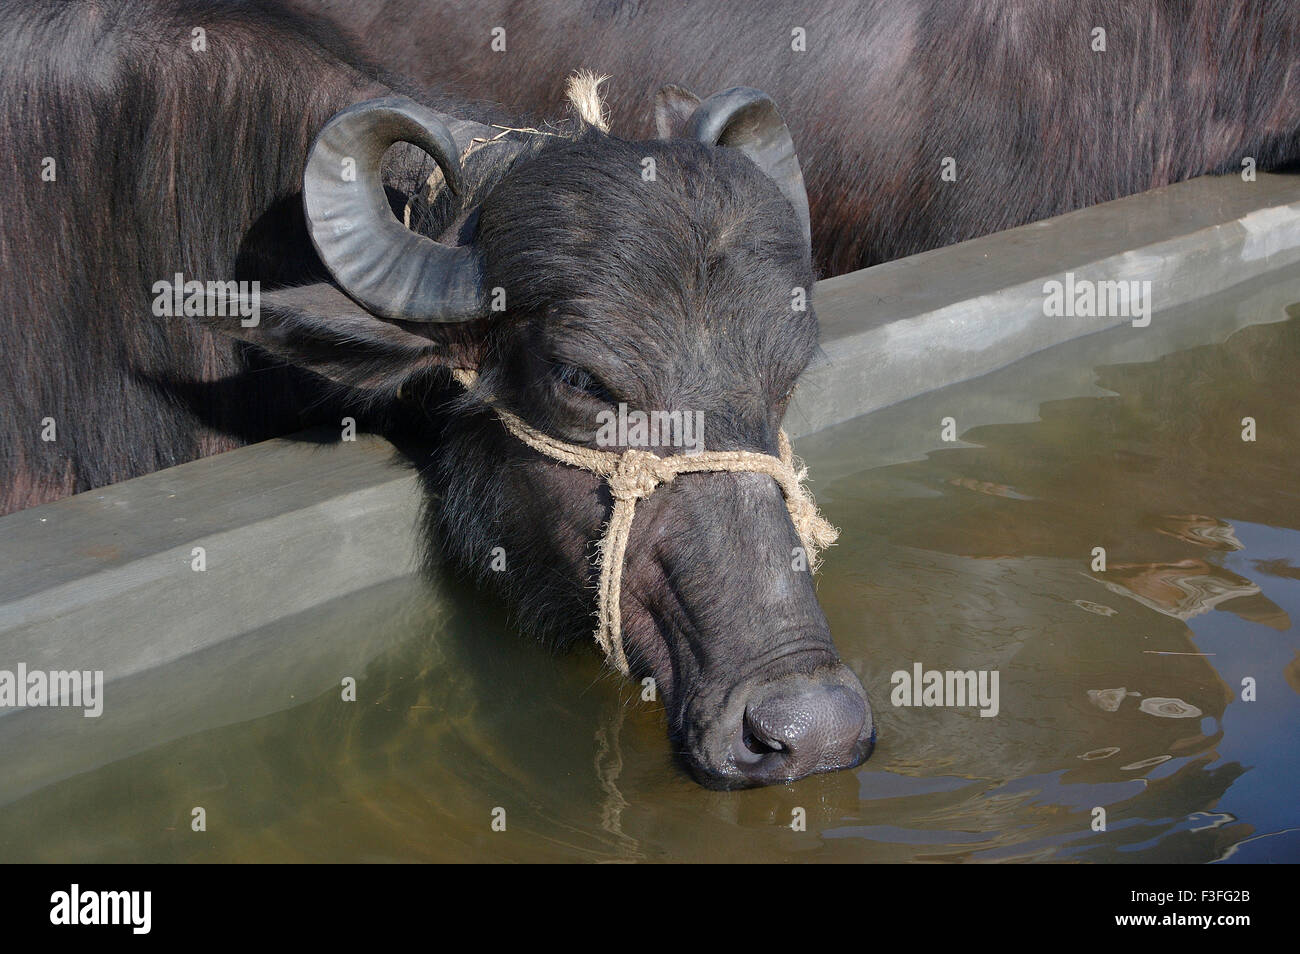 Búfalo de agua potable de estanque artificial, India, Asia Foto de stock